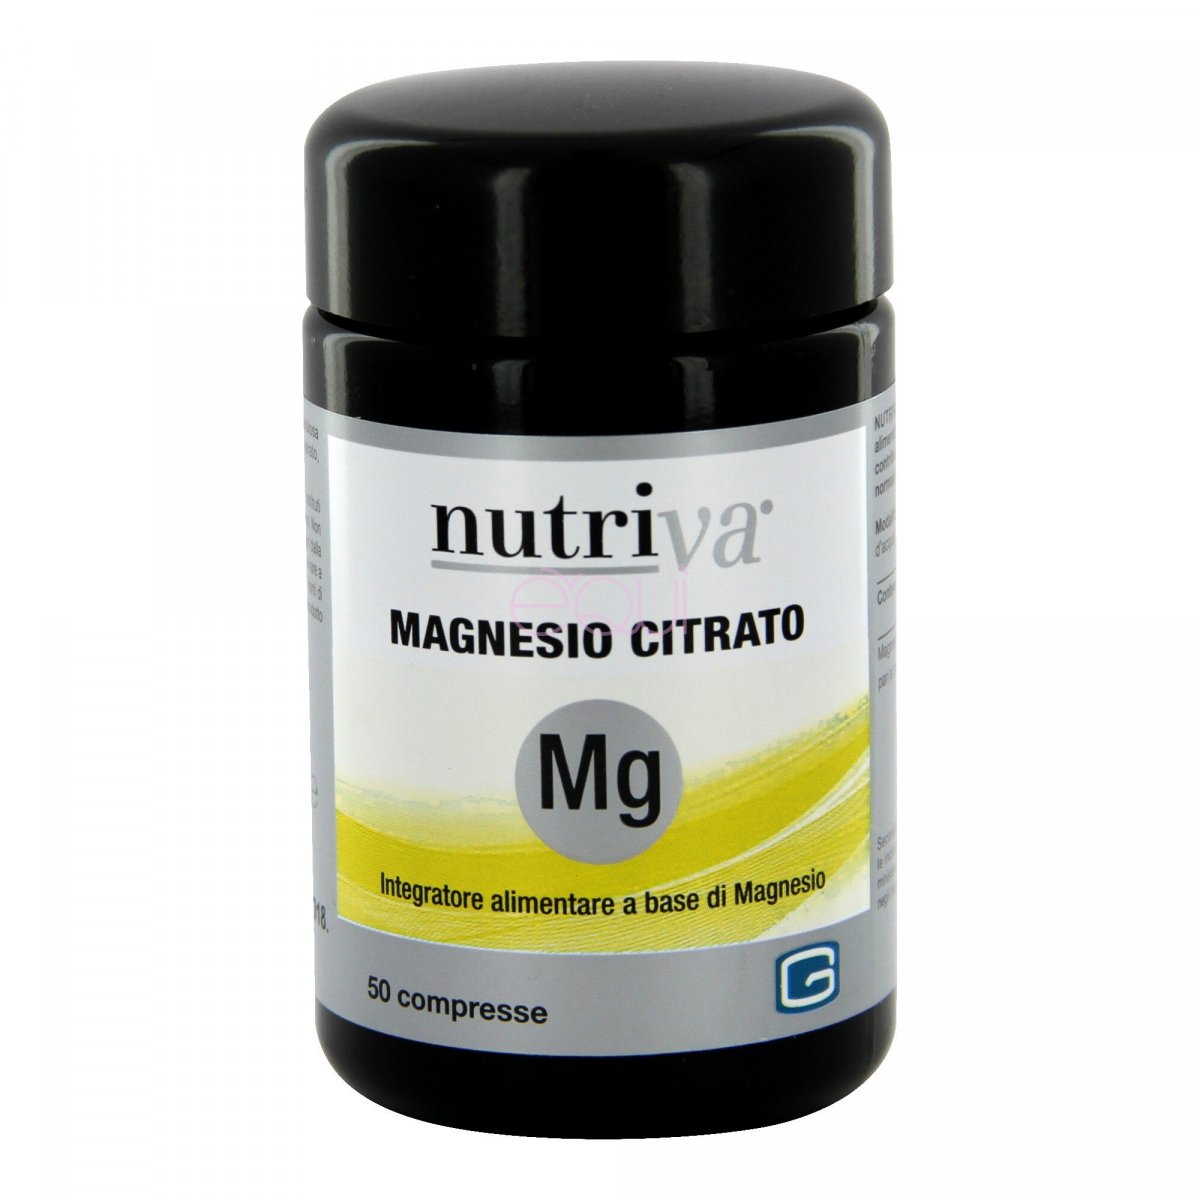 NUTRIVA MAGNESIO CITRATO - Compresse Integratore alimentare utile per le carenze di magnesio. La carenza di magnesio si può presentare con affaticamento, irritabilità, stress, crampi, ansia, agitazione, insonnia, mal di testa, sbalzi d’umore, irrigidimenti muscolari. 50 compresse